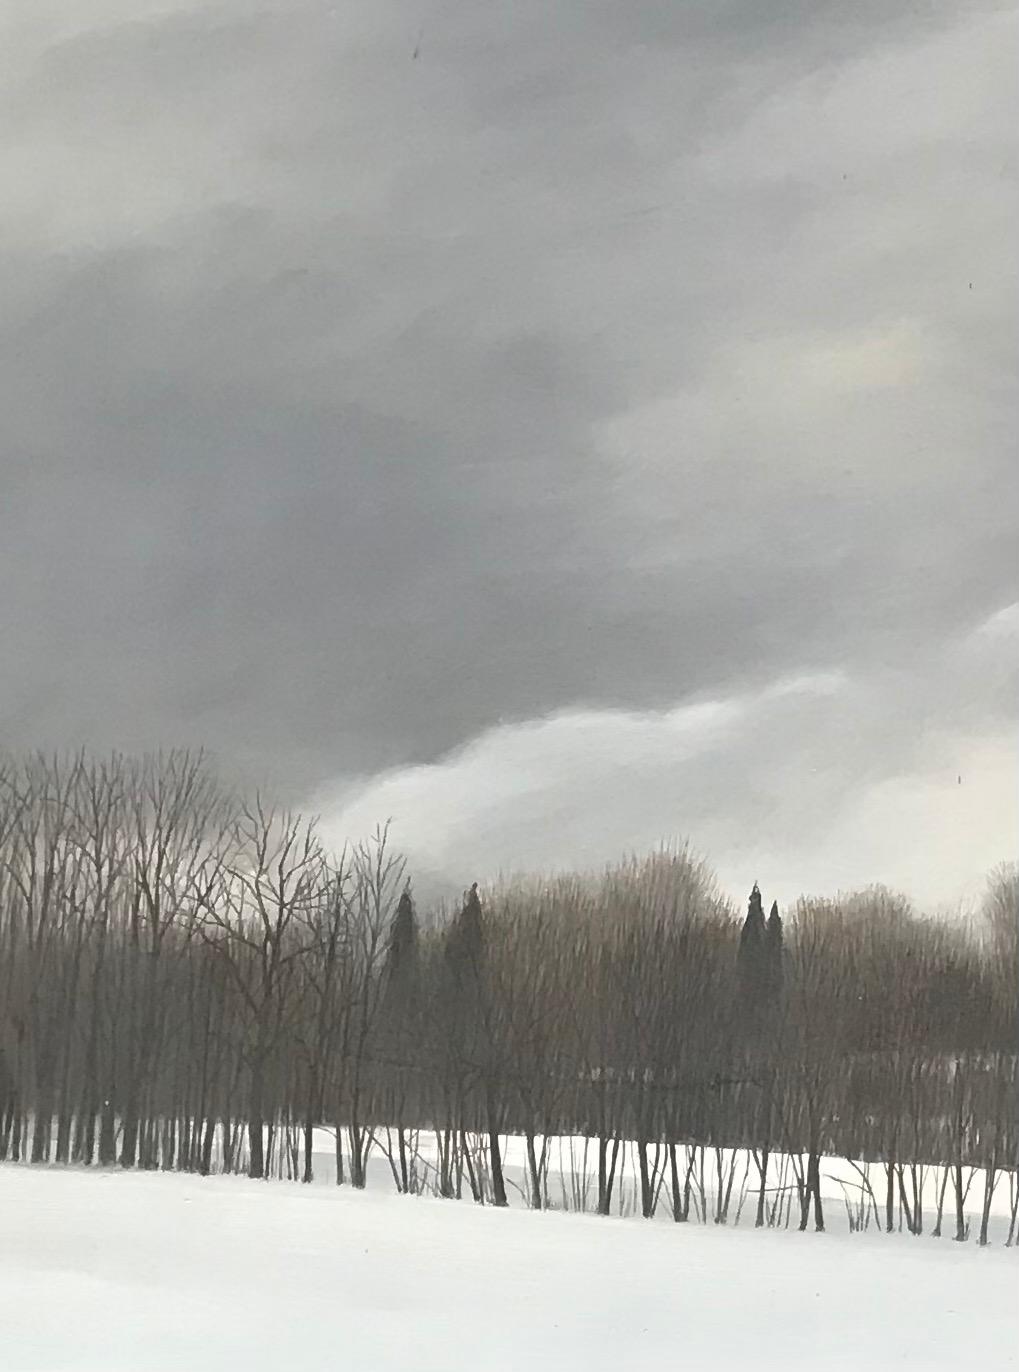 Savoie Landscape by Claude Sauthier - Oil on wood 65x92 cm For Sale 2